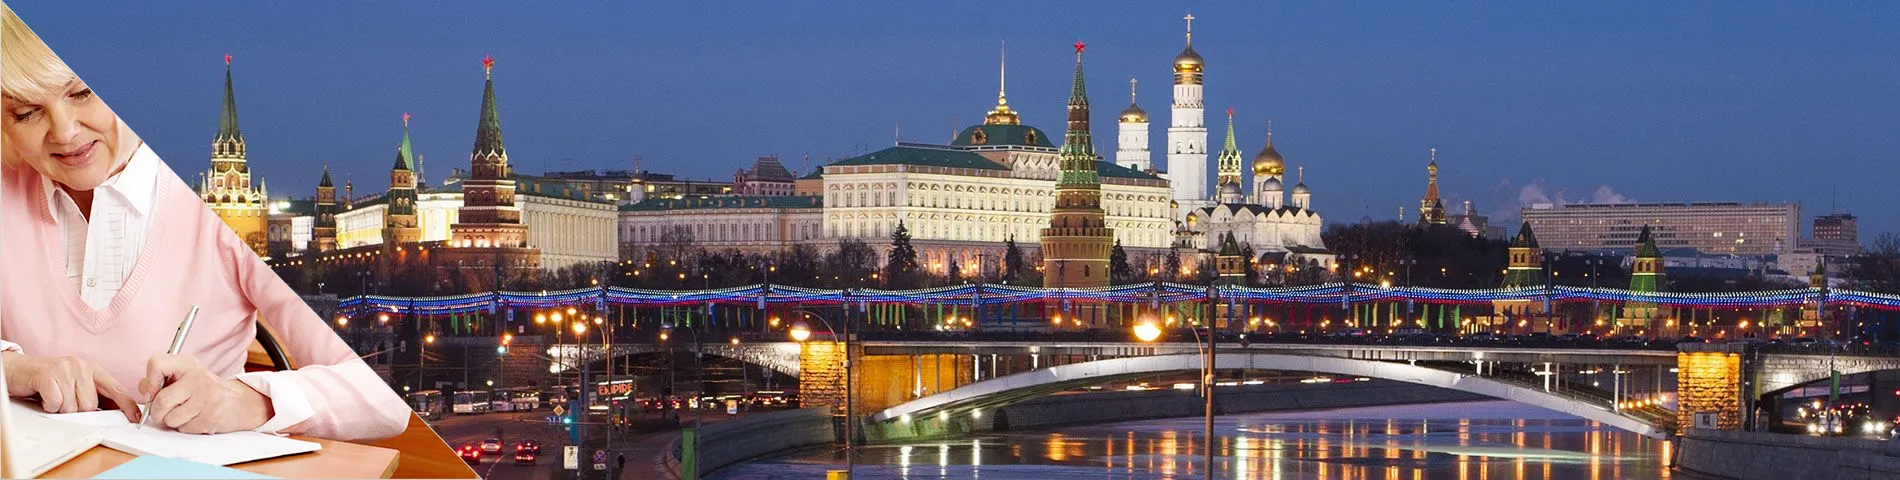 Moscou - Sènior (més de 50 anys)